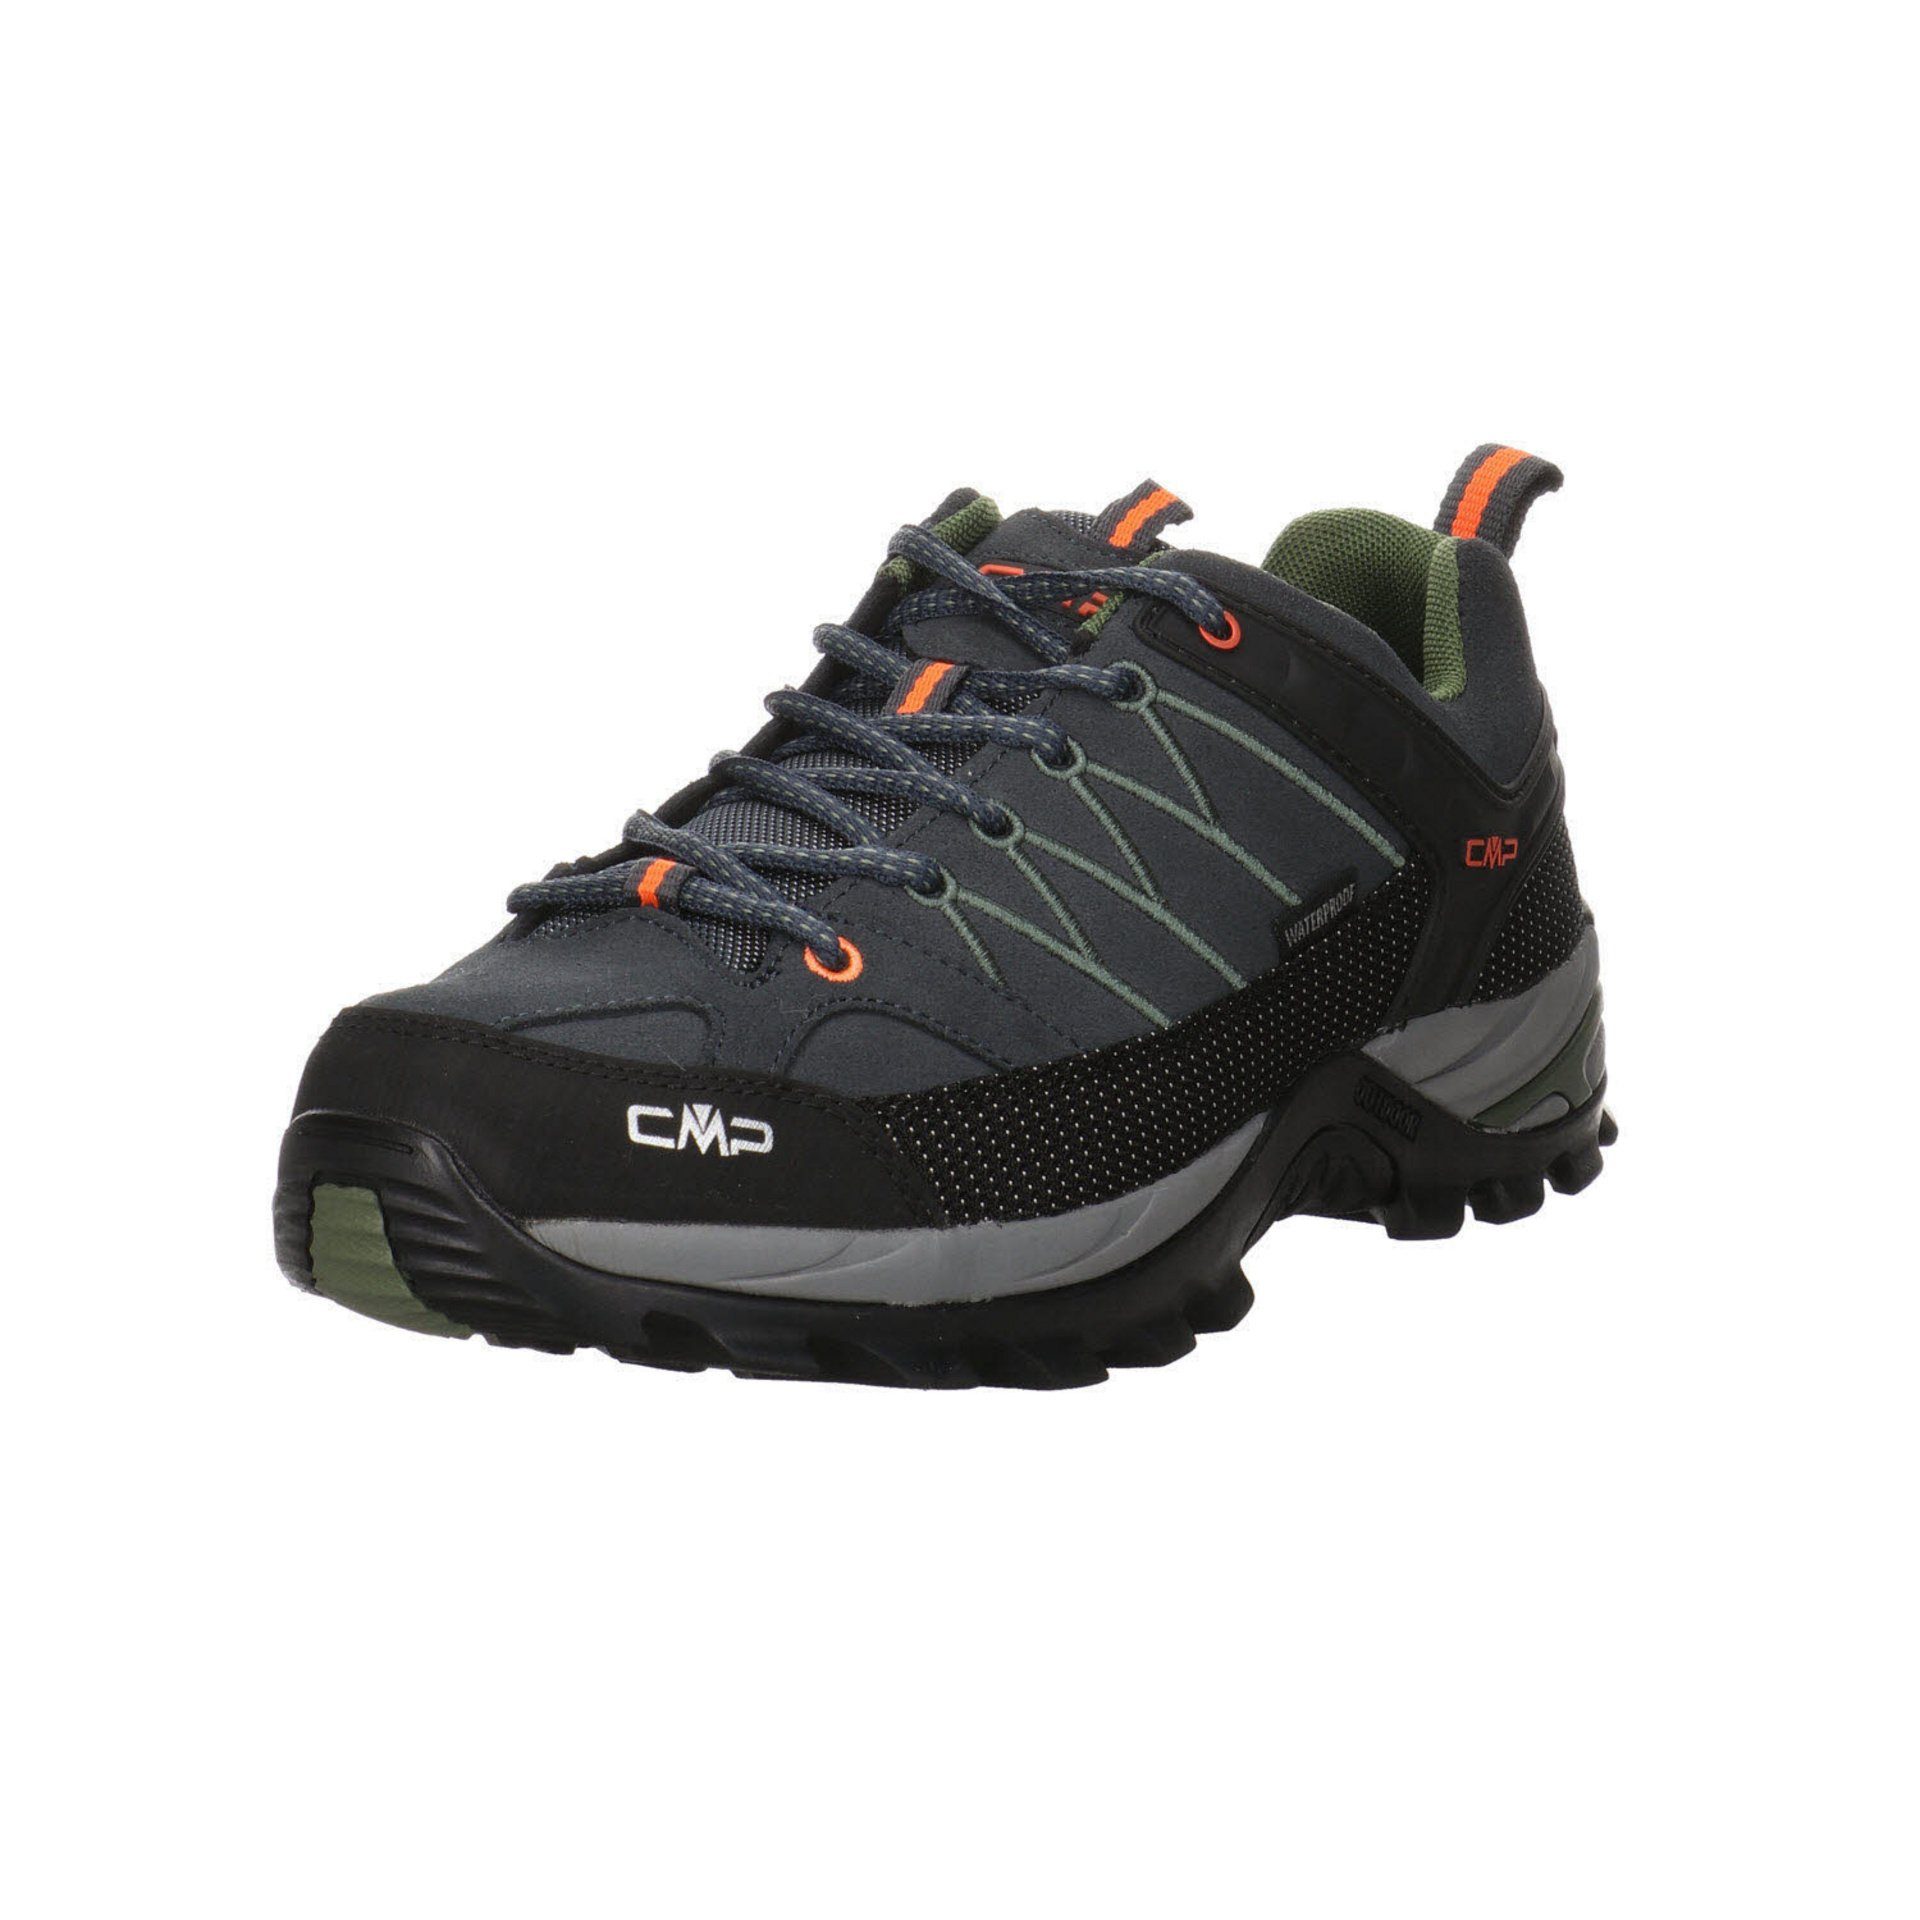 CMP Herren Outdoor Schuhe Rigel Low Outdoorschuh Outdoorschuh Leder-/Textilkombination Grau (03201805)